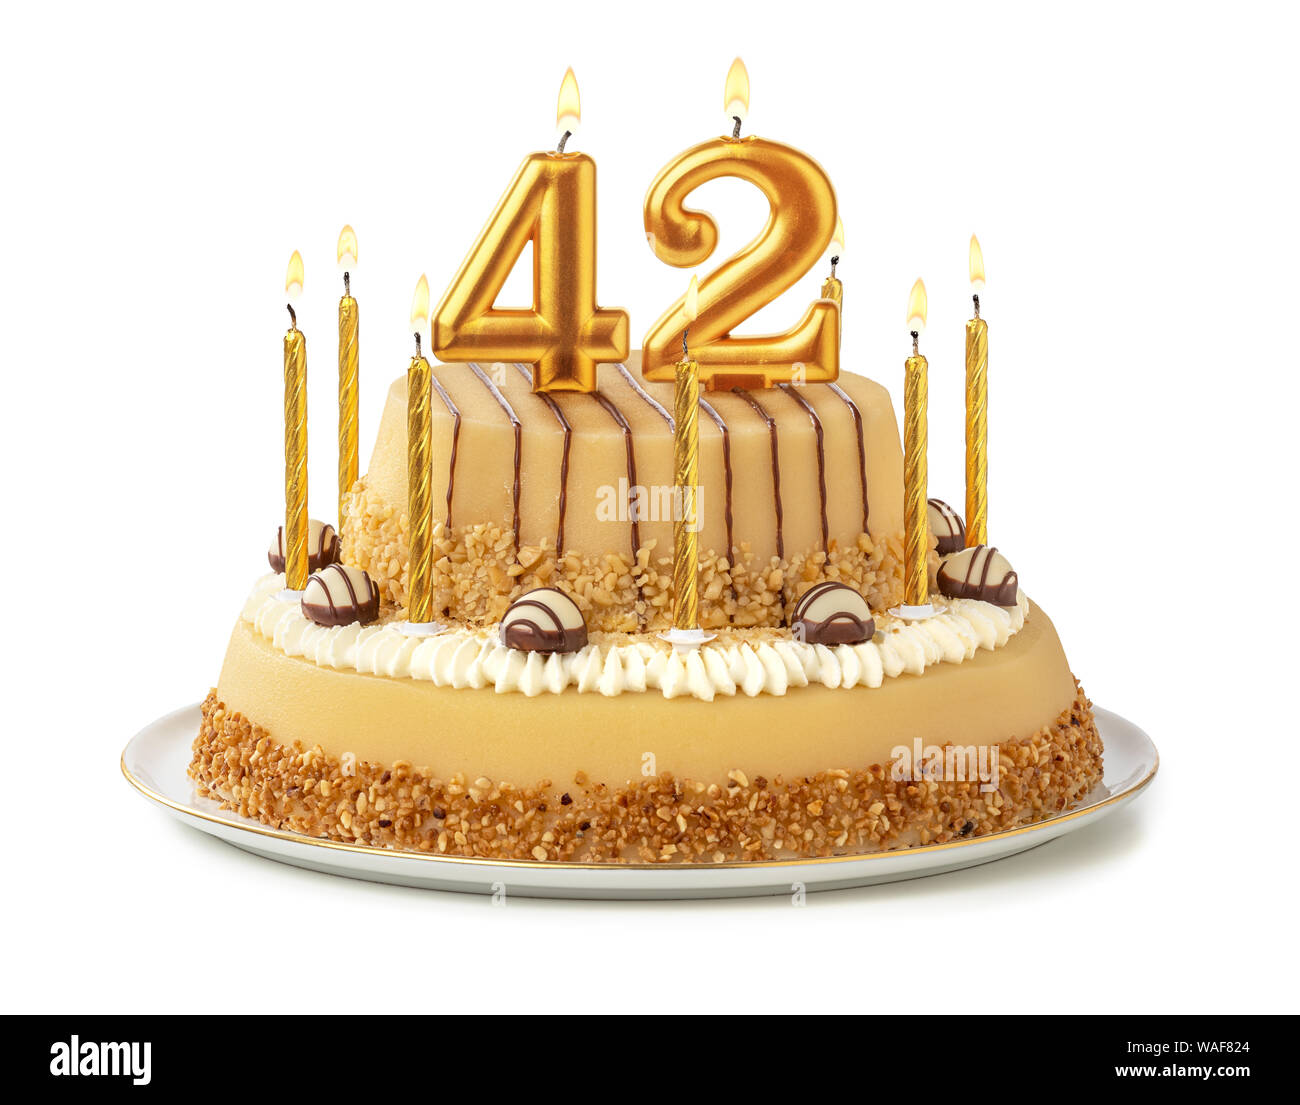 Gâteau de fête avec des bougies - 42 Nombre d'or Photo Stock - Alamy